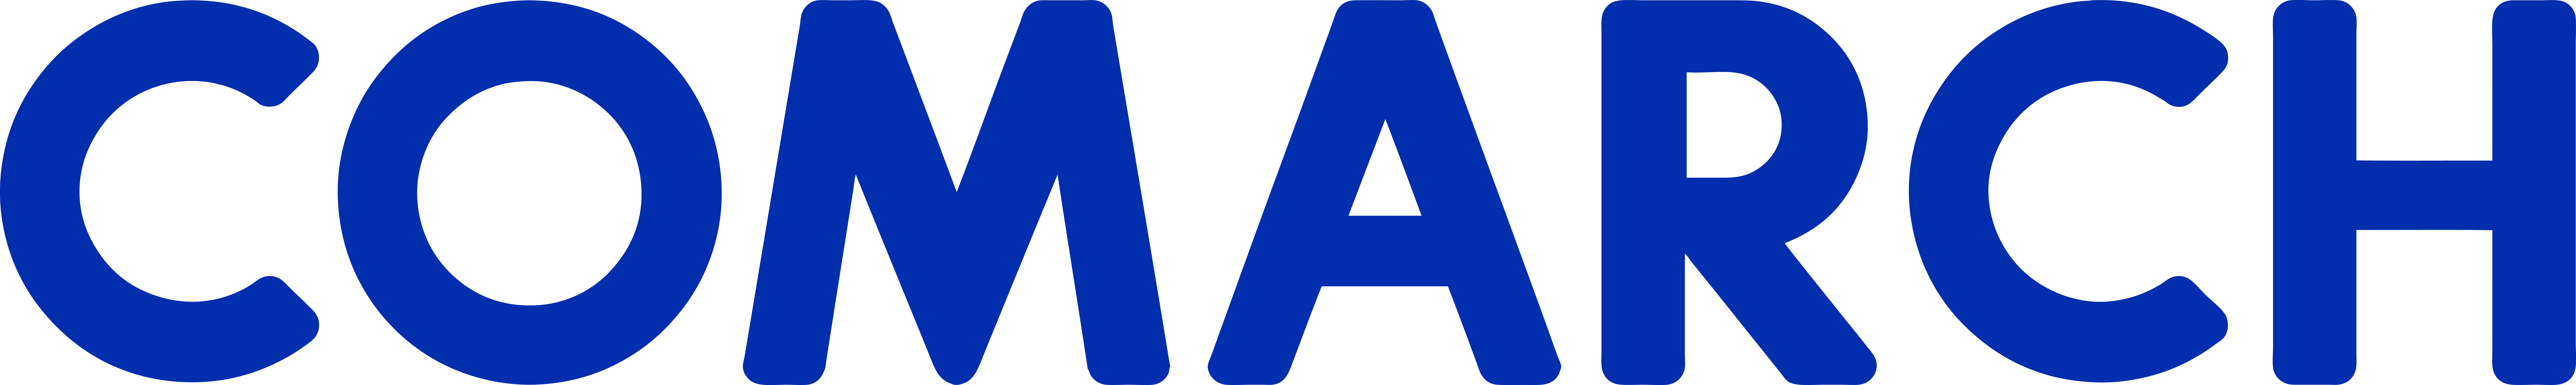 Logo wpisu Comarch SA - EZD  - System do Elektronicznego Obiegu Dokumentów